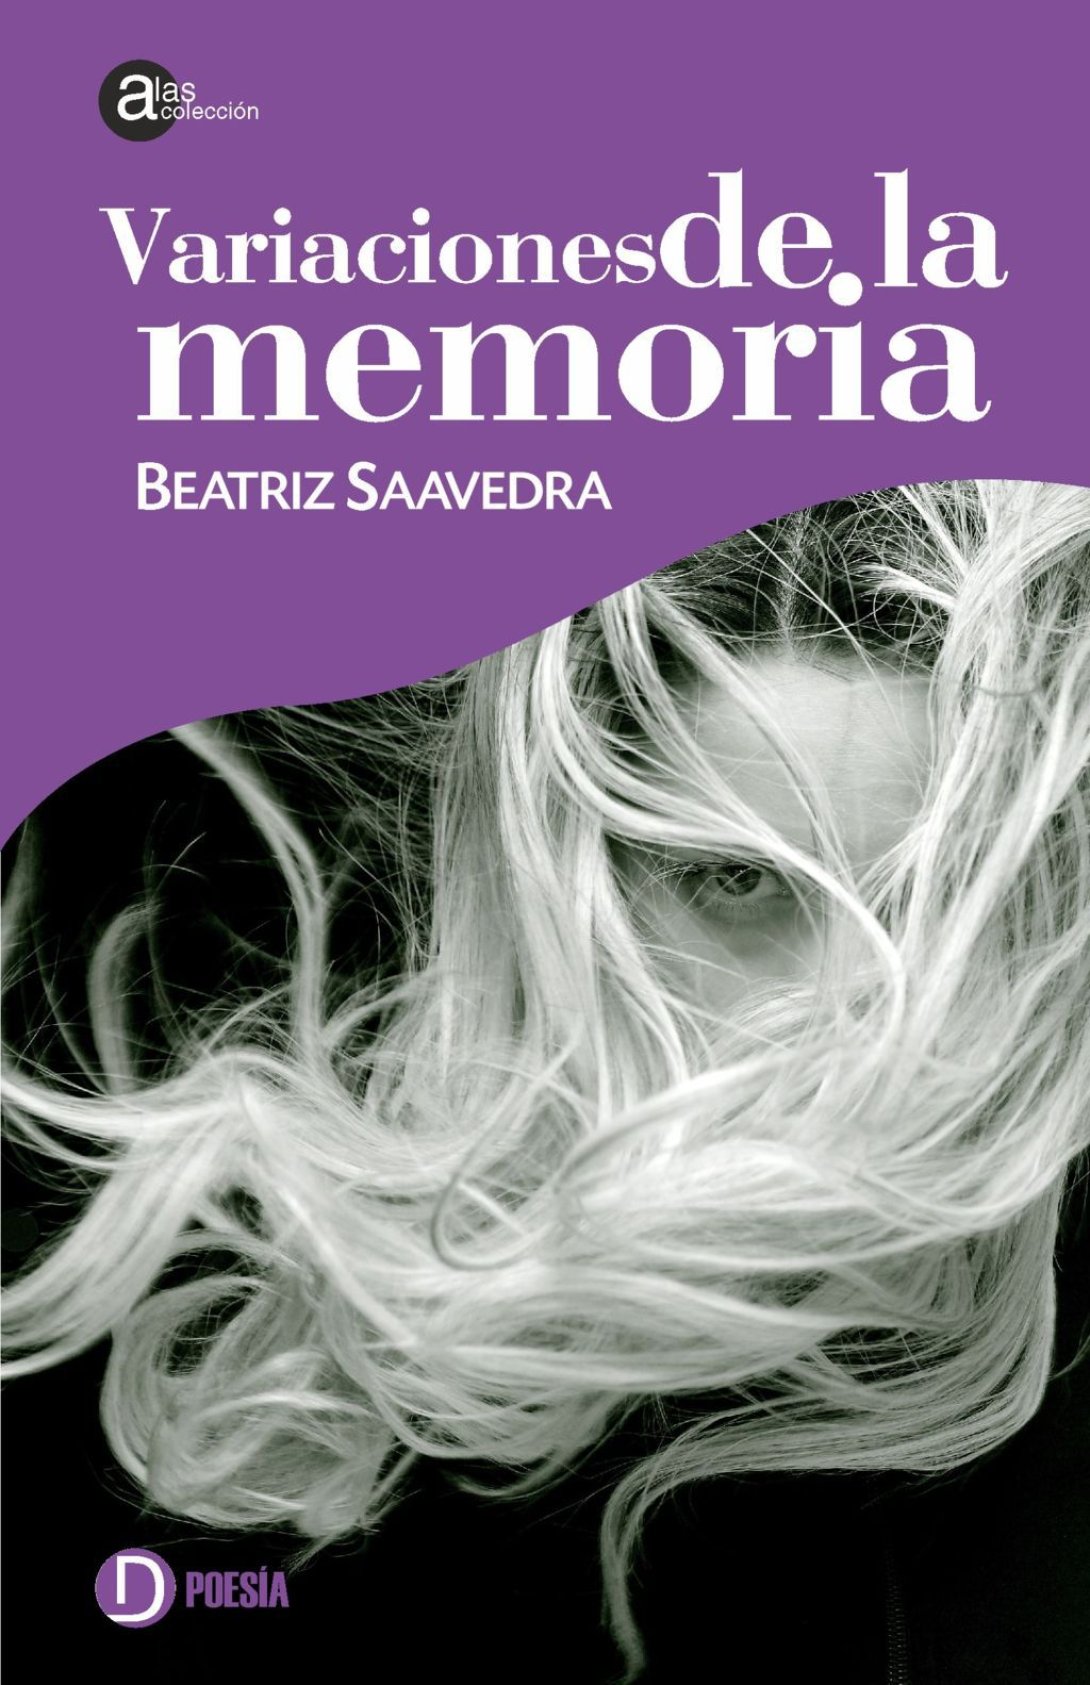 Libro Deslinde colección Alas Variaciones de la memoria de Beatriz Saavedra